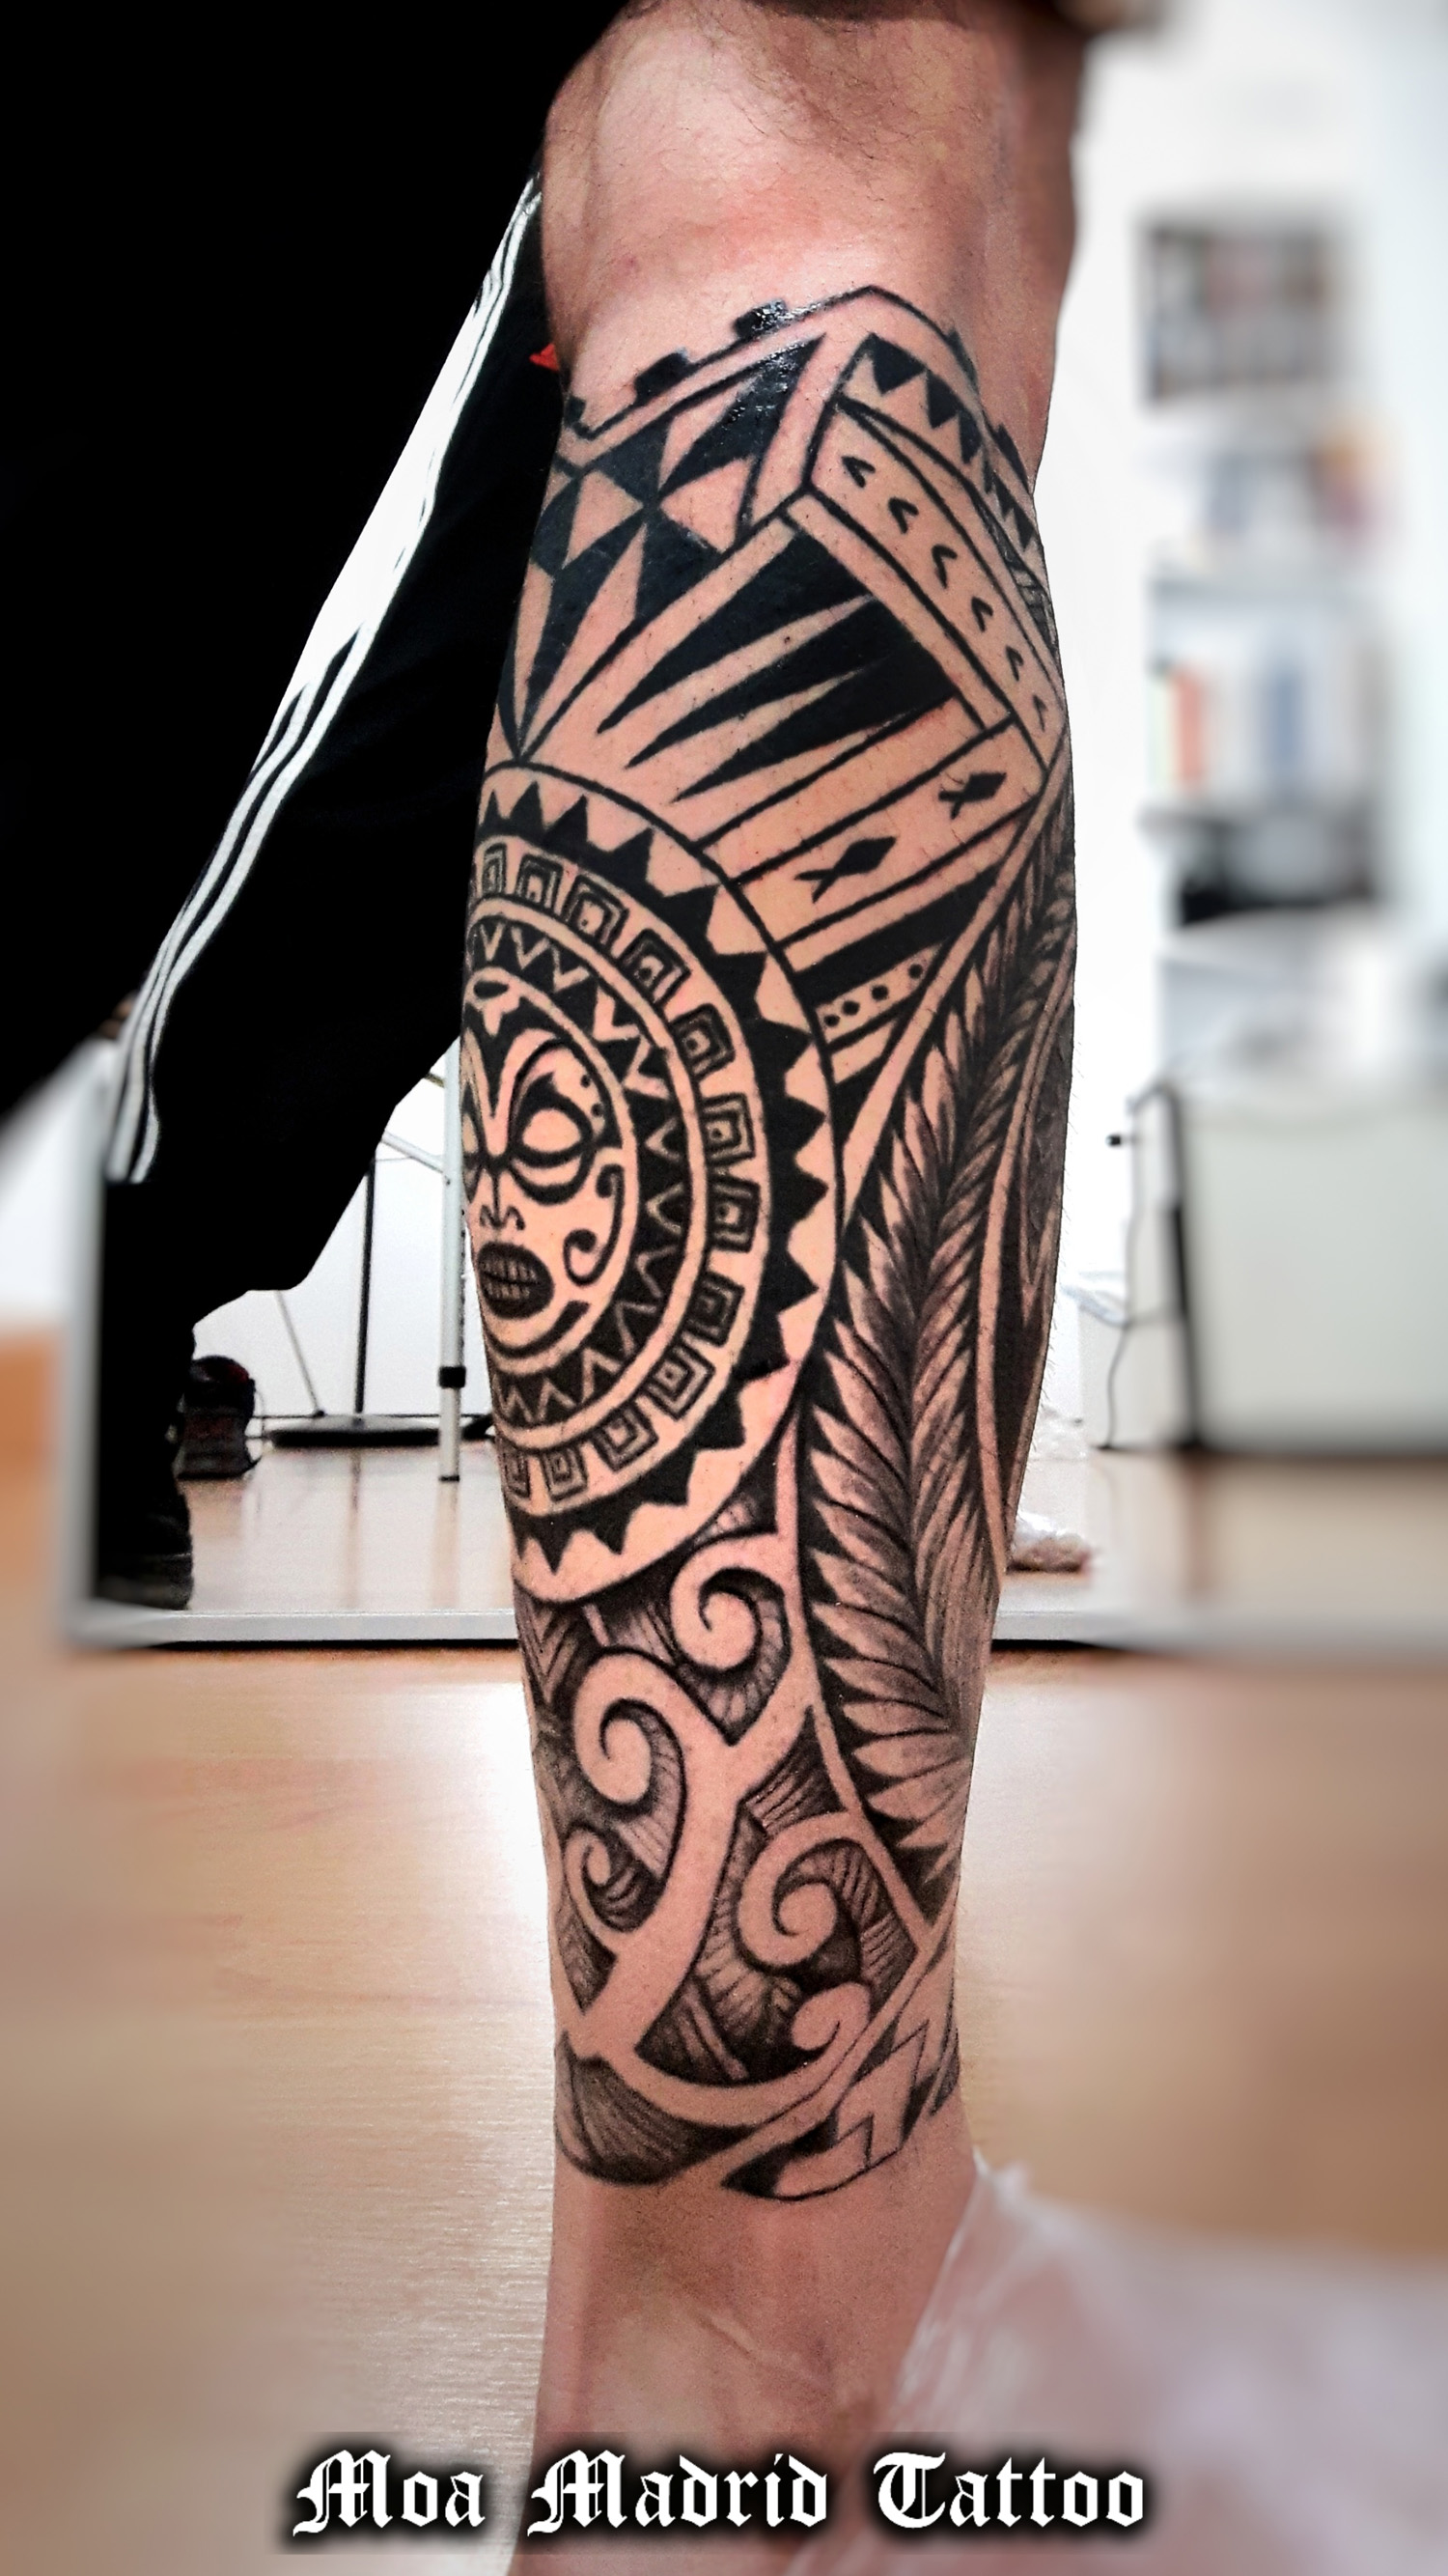 Lateral del tatuaje maorí en la pierna con varios elementos decorativos